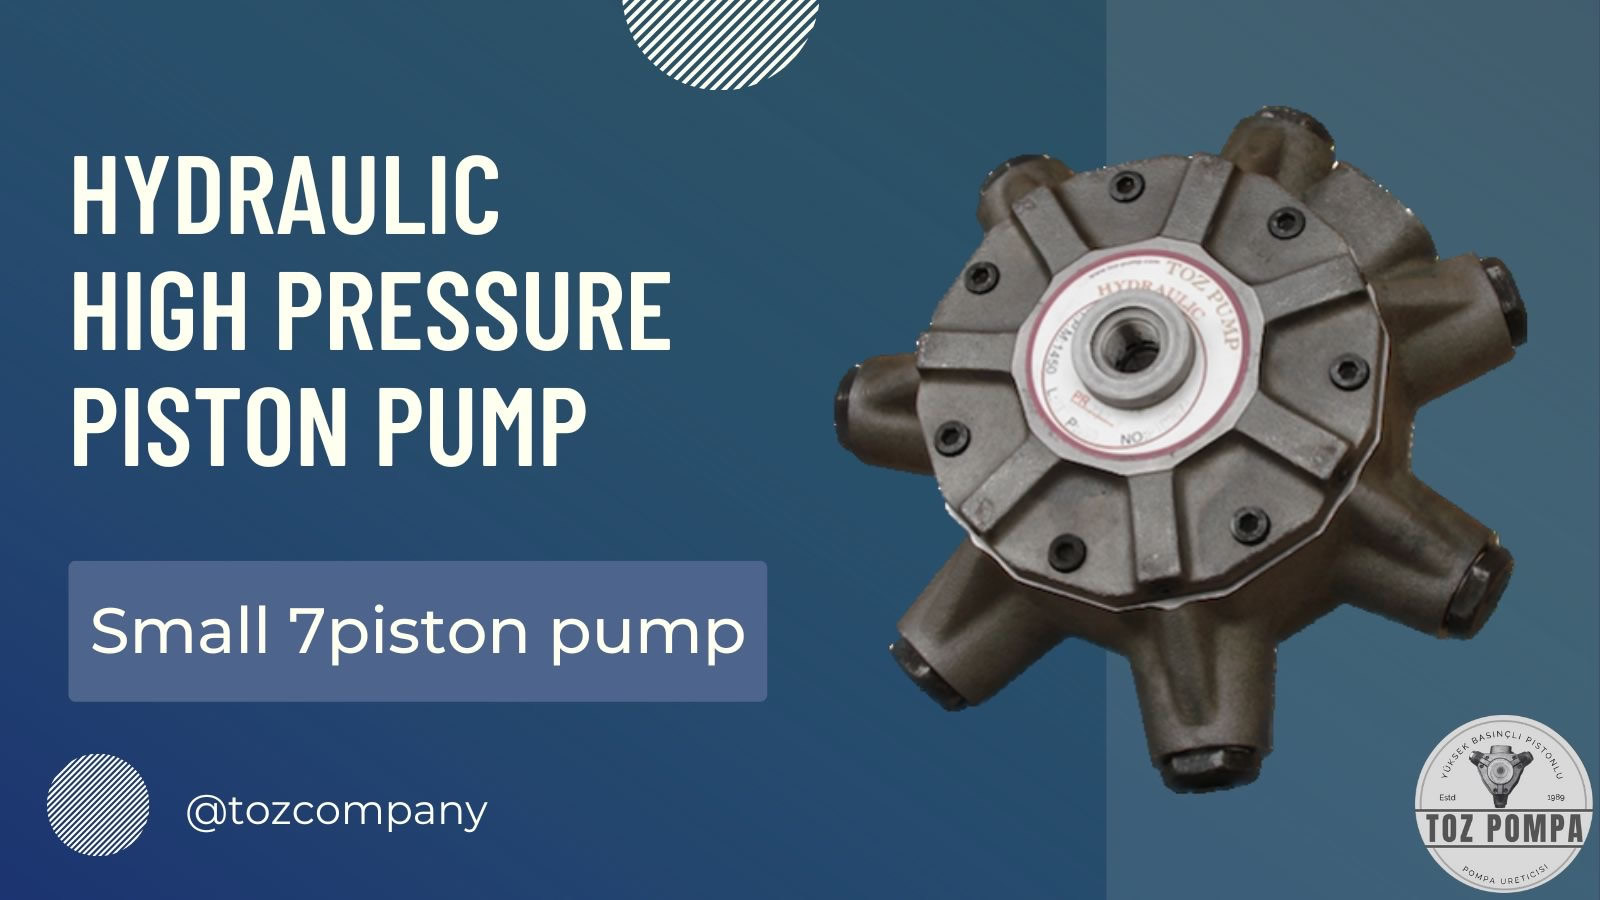 Small 7 piston pump